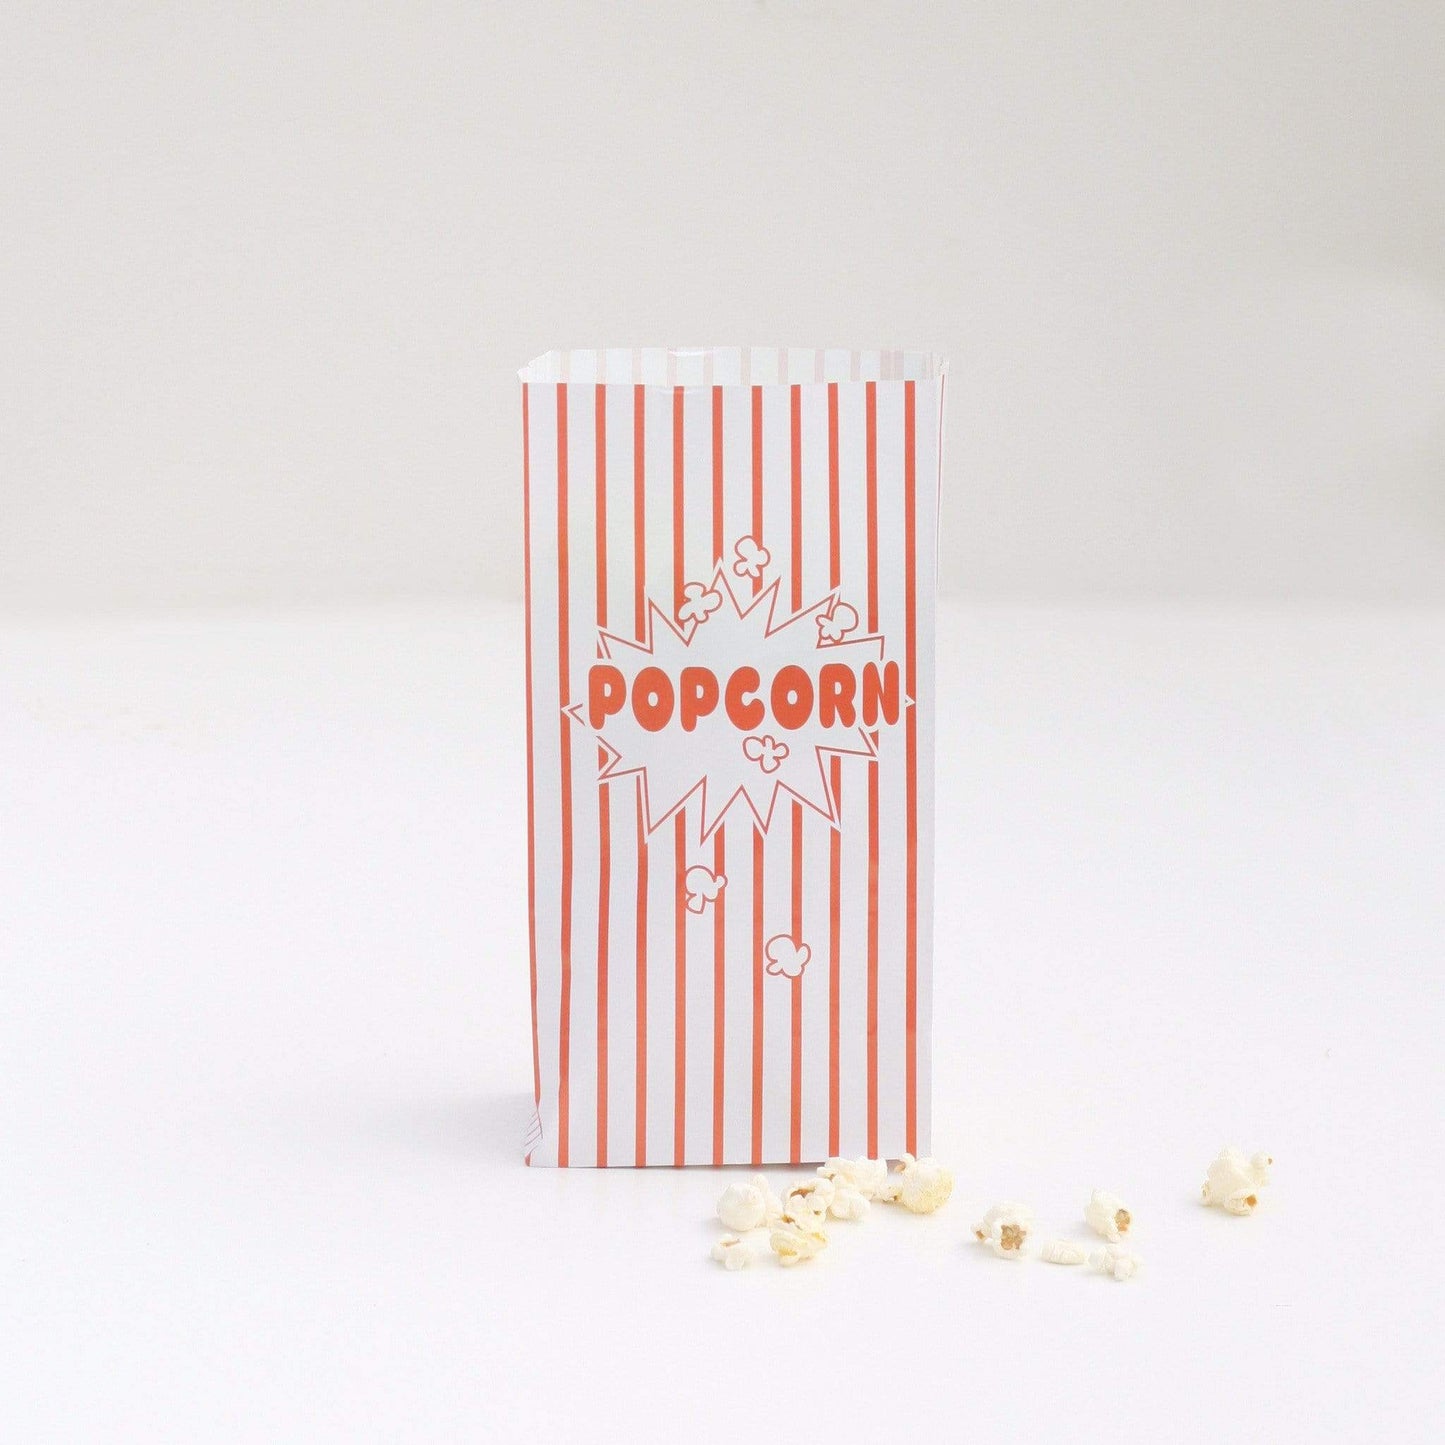 Popcorn Bags | Movie Party Supplies | Pretty Little Party Shop Unique